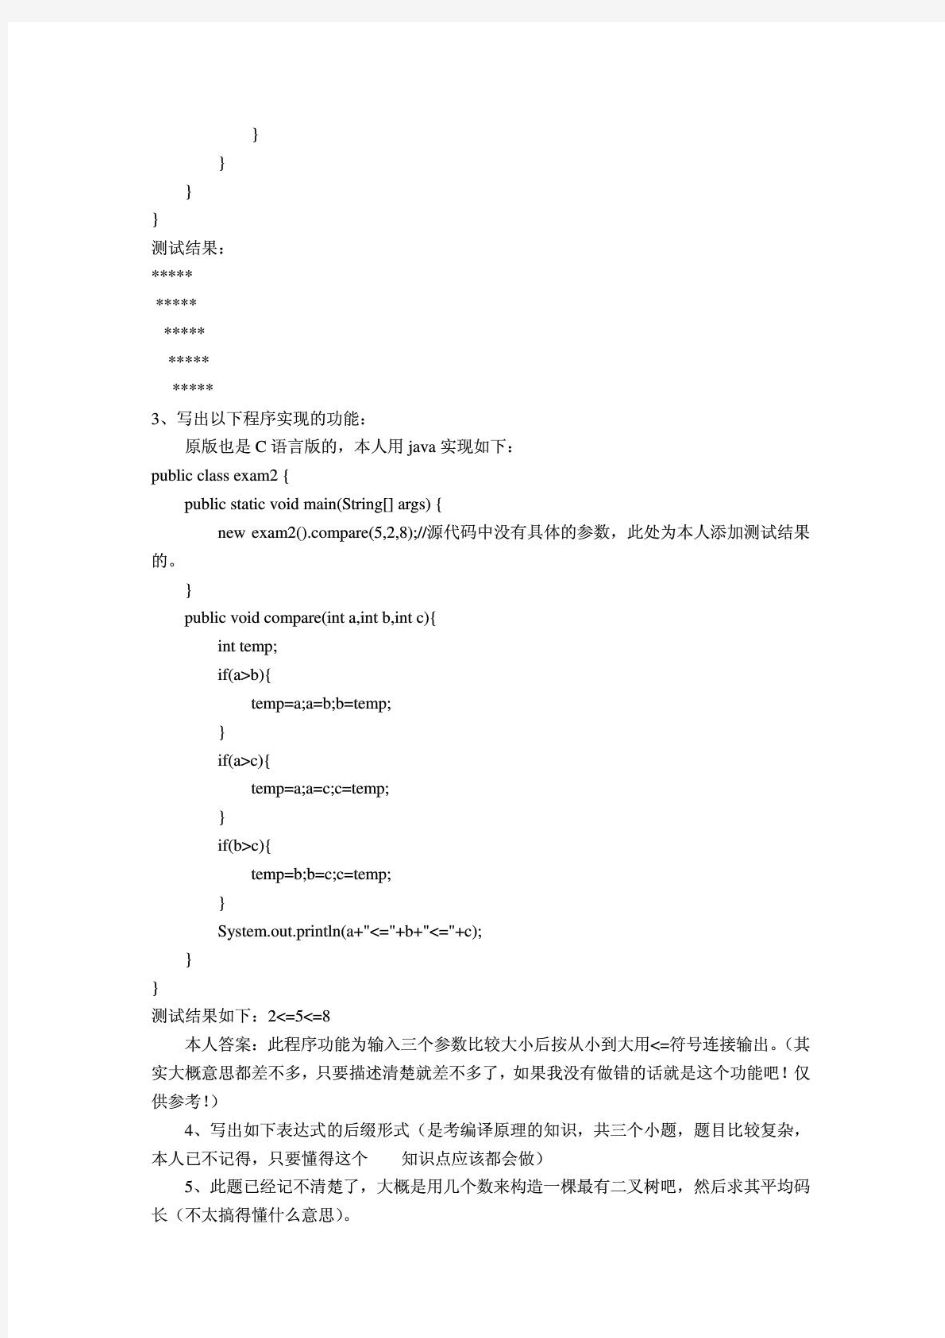 中国人民银行计算机类笔试